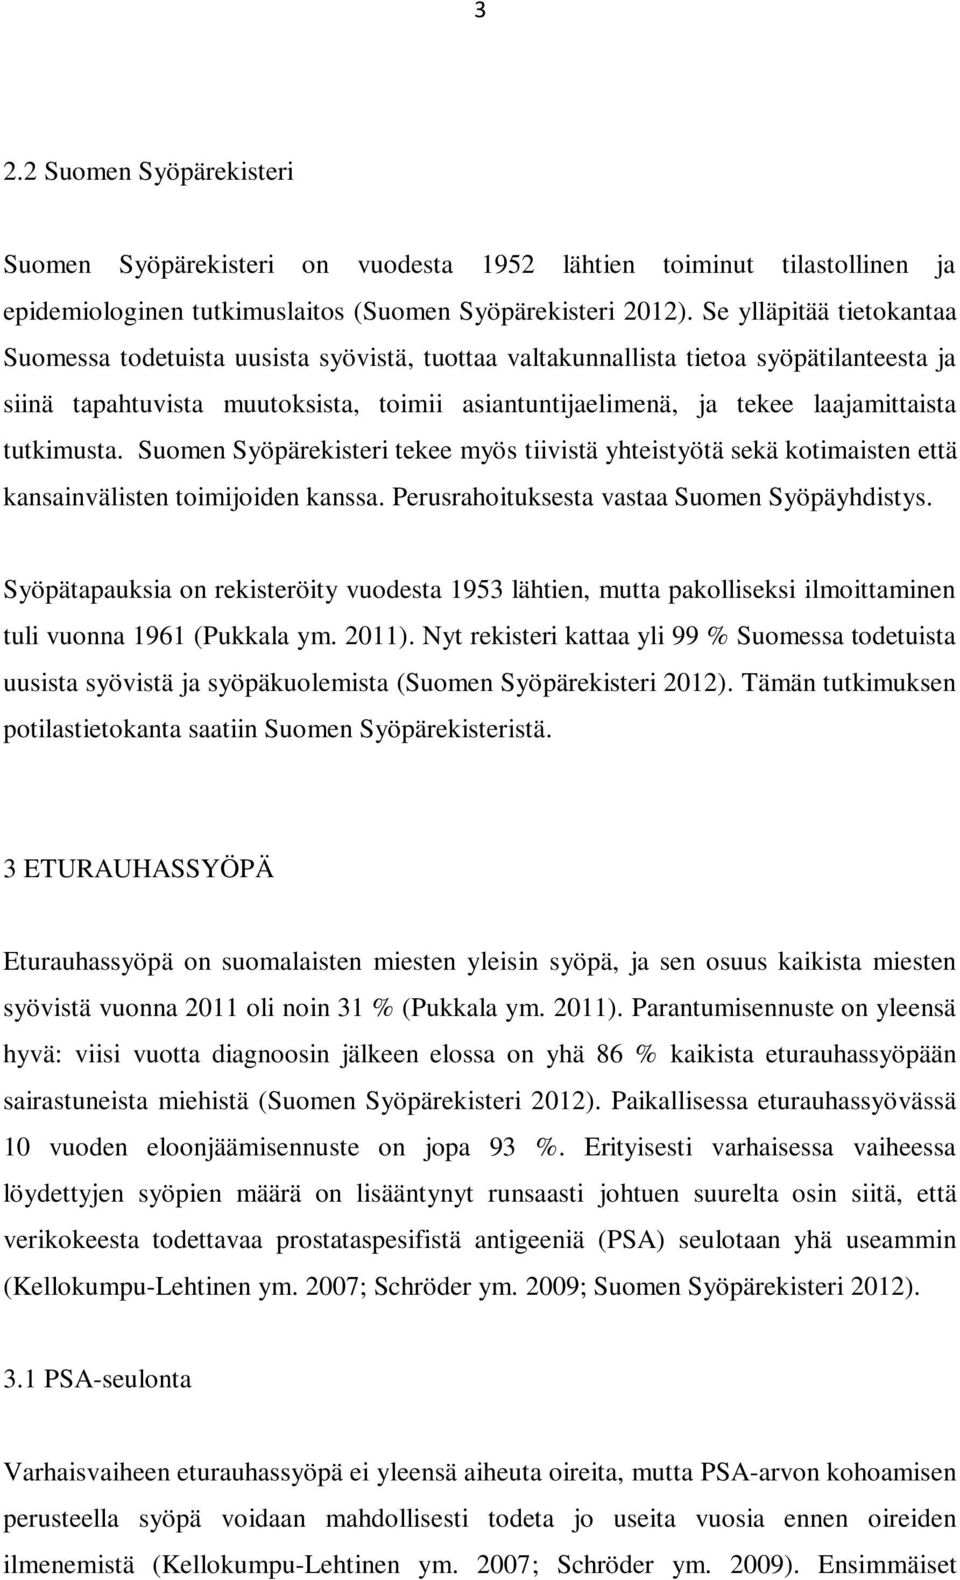 tutkimusta. Suomen Syöpärekisteri tekee myös tiivistä yhteistyötä sekä kotimaisten että kansainvälisten toimijoiden kanssa. Perusrahoituksesta vastaa Suomen Syöpäyhdistys.